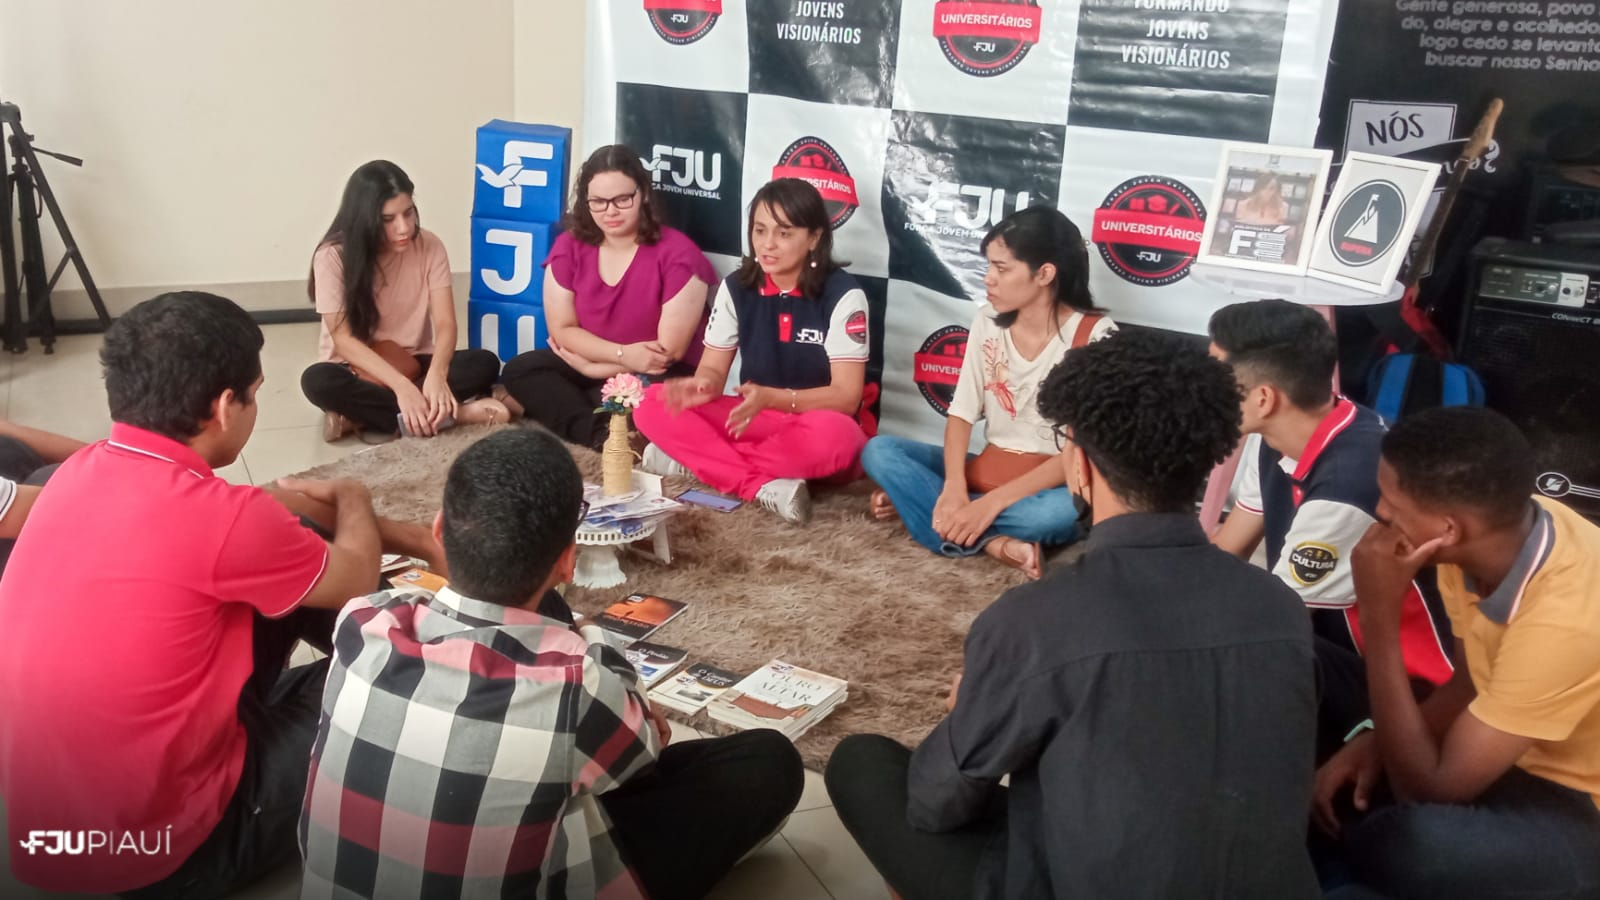 FJUni promove roda universitária com estudantes no Piauí